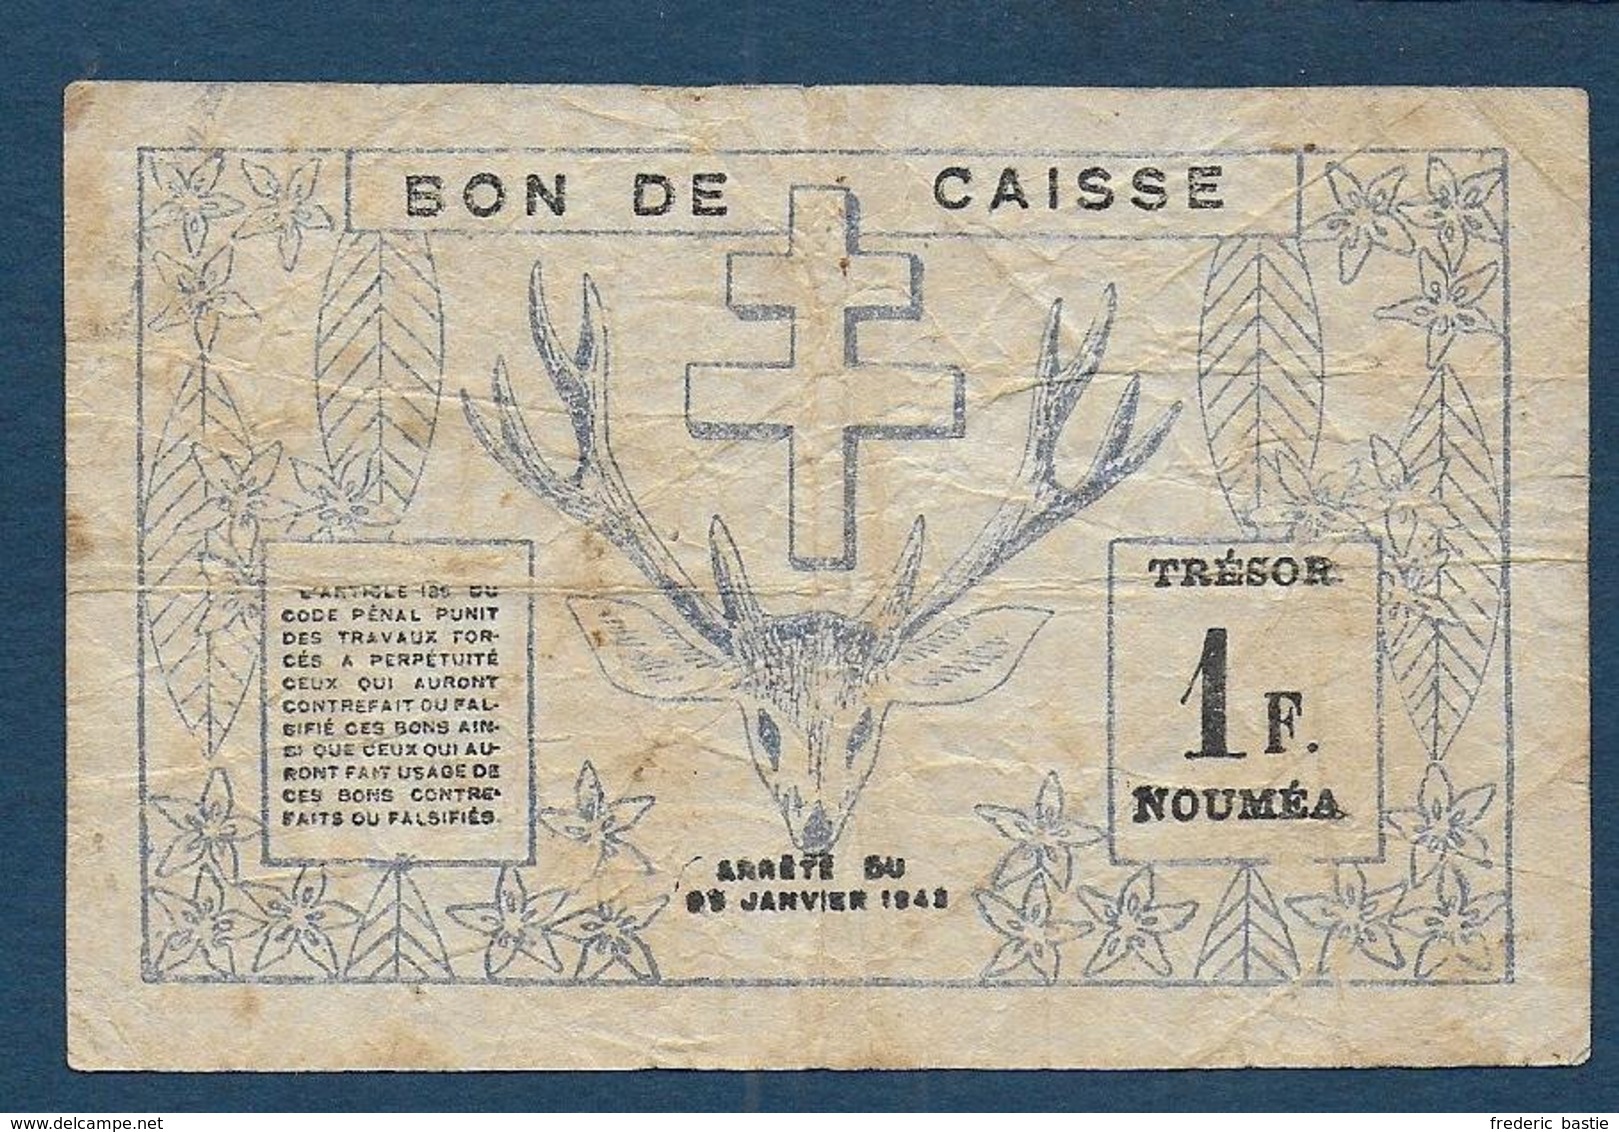 NOUVELLE CALEDONIE - Billet De 1 Franc De 1943 - Nouméa (Nieuw-Caledonië 1873-1985)